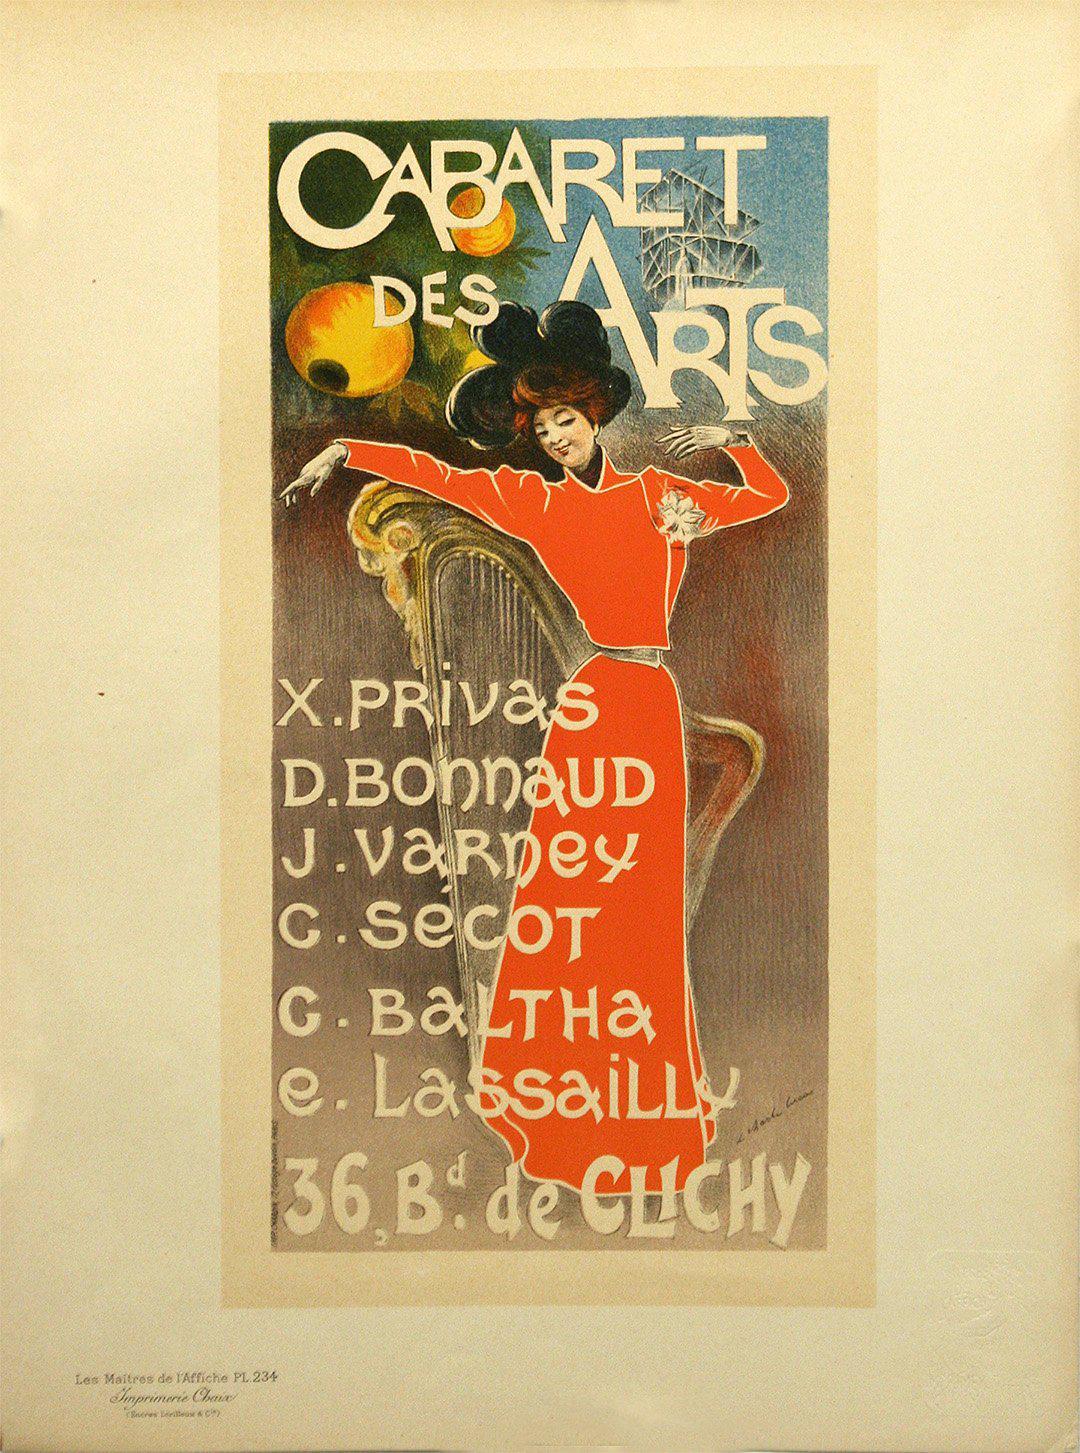 Original Vintage Maitre de l'Affiche Pl 234 Cabaret des Arts by Charles Lucas